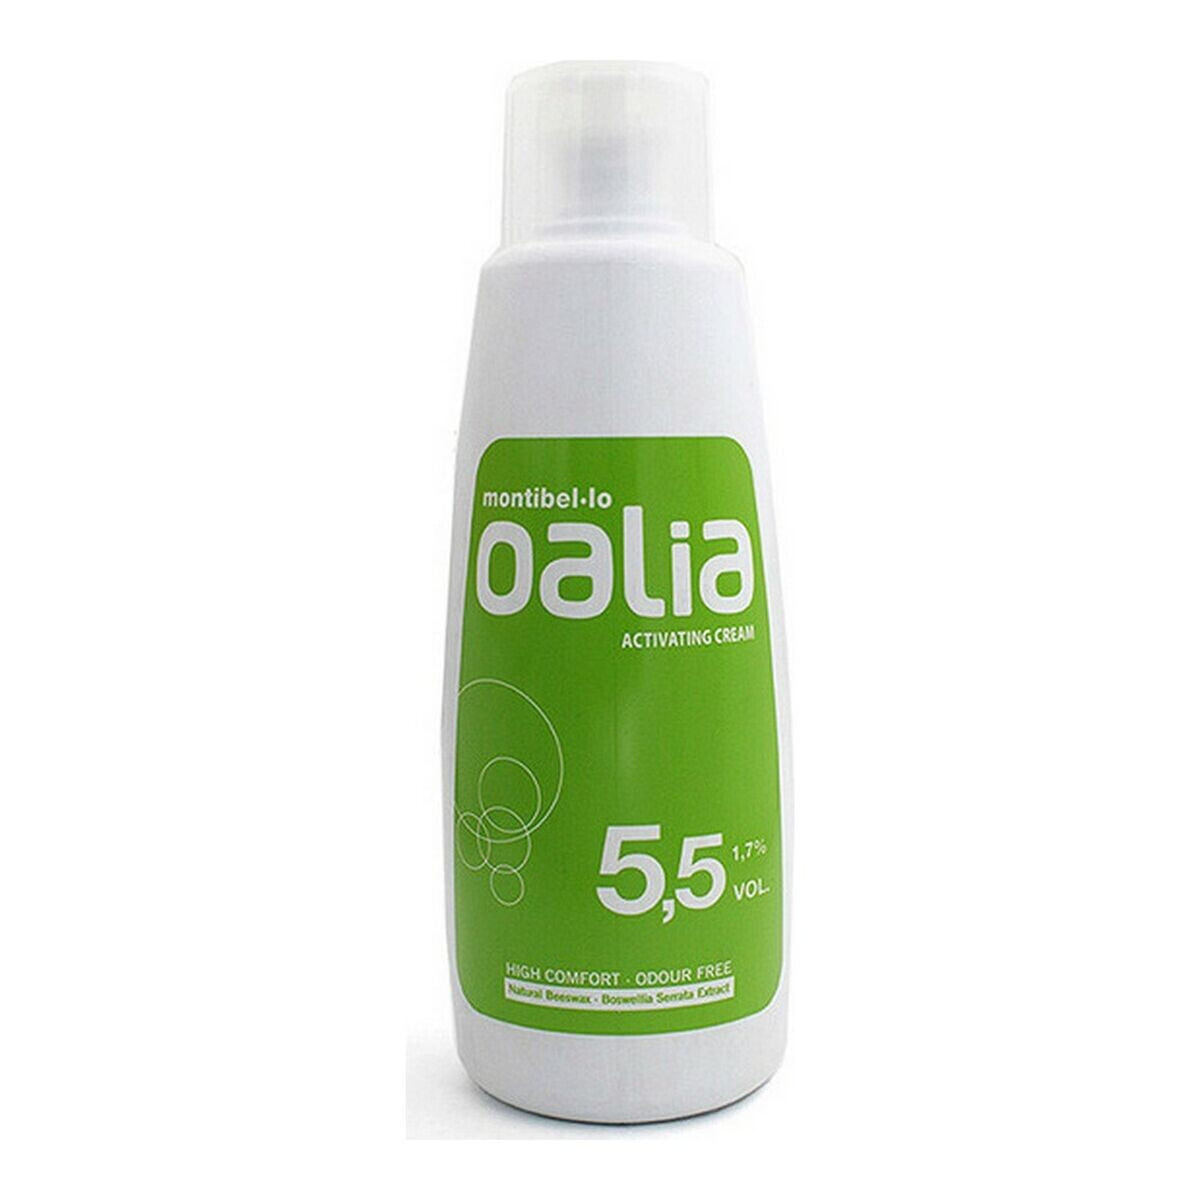 Активатор цвета Oalia Montibello 8.42953E+12 5.5 vol (1.7%) (90 ml)